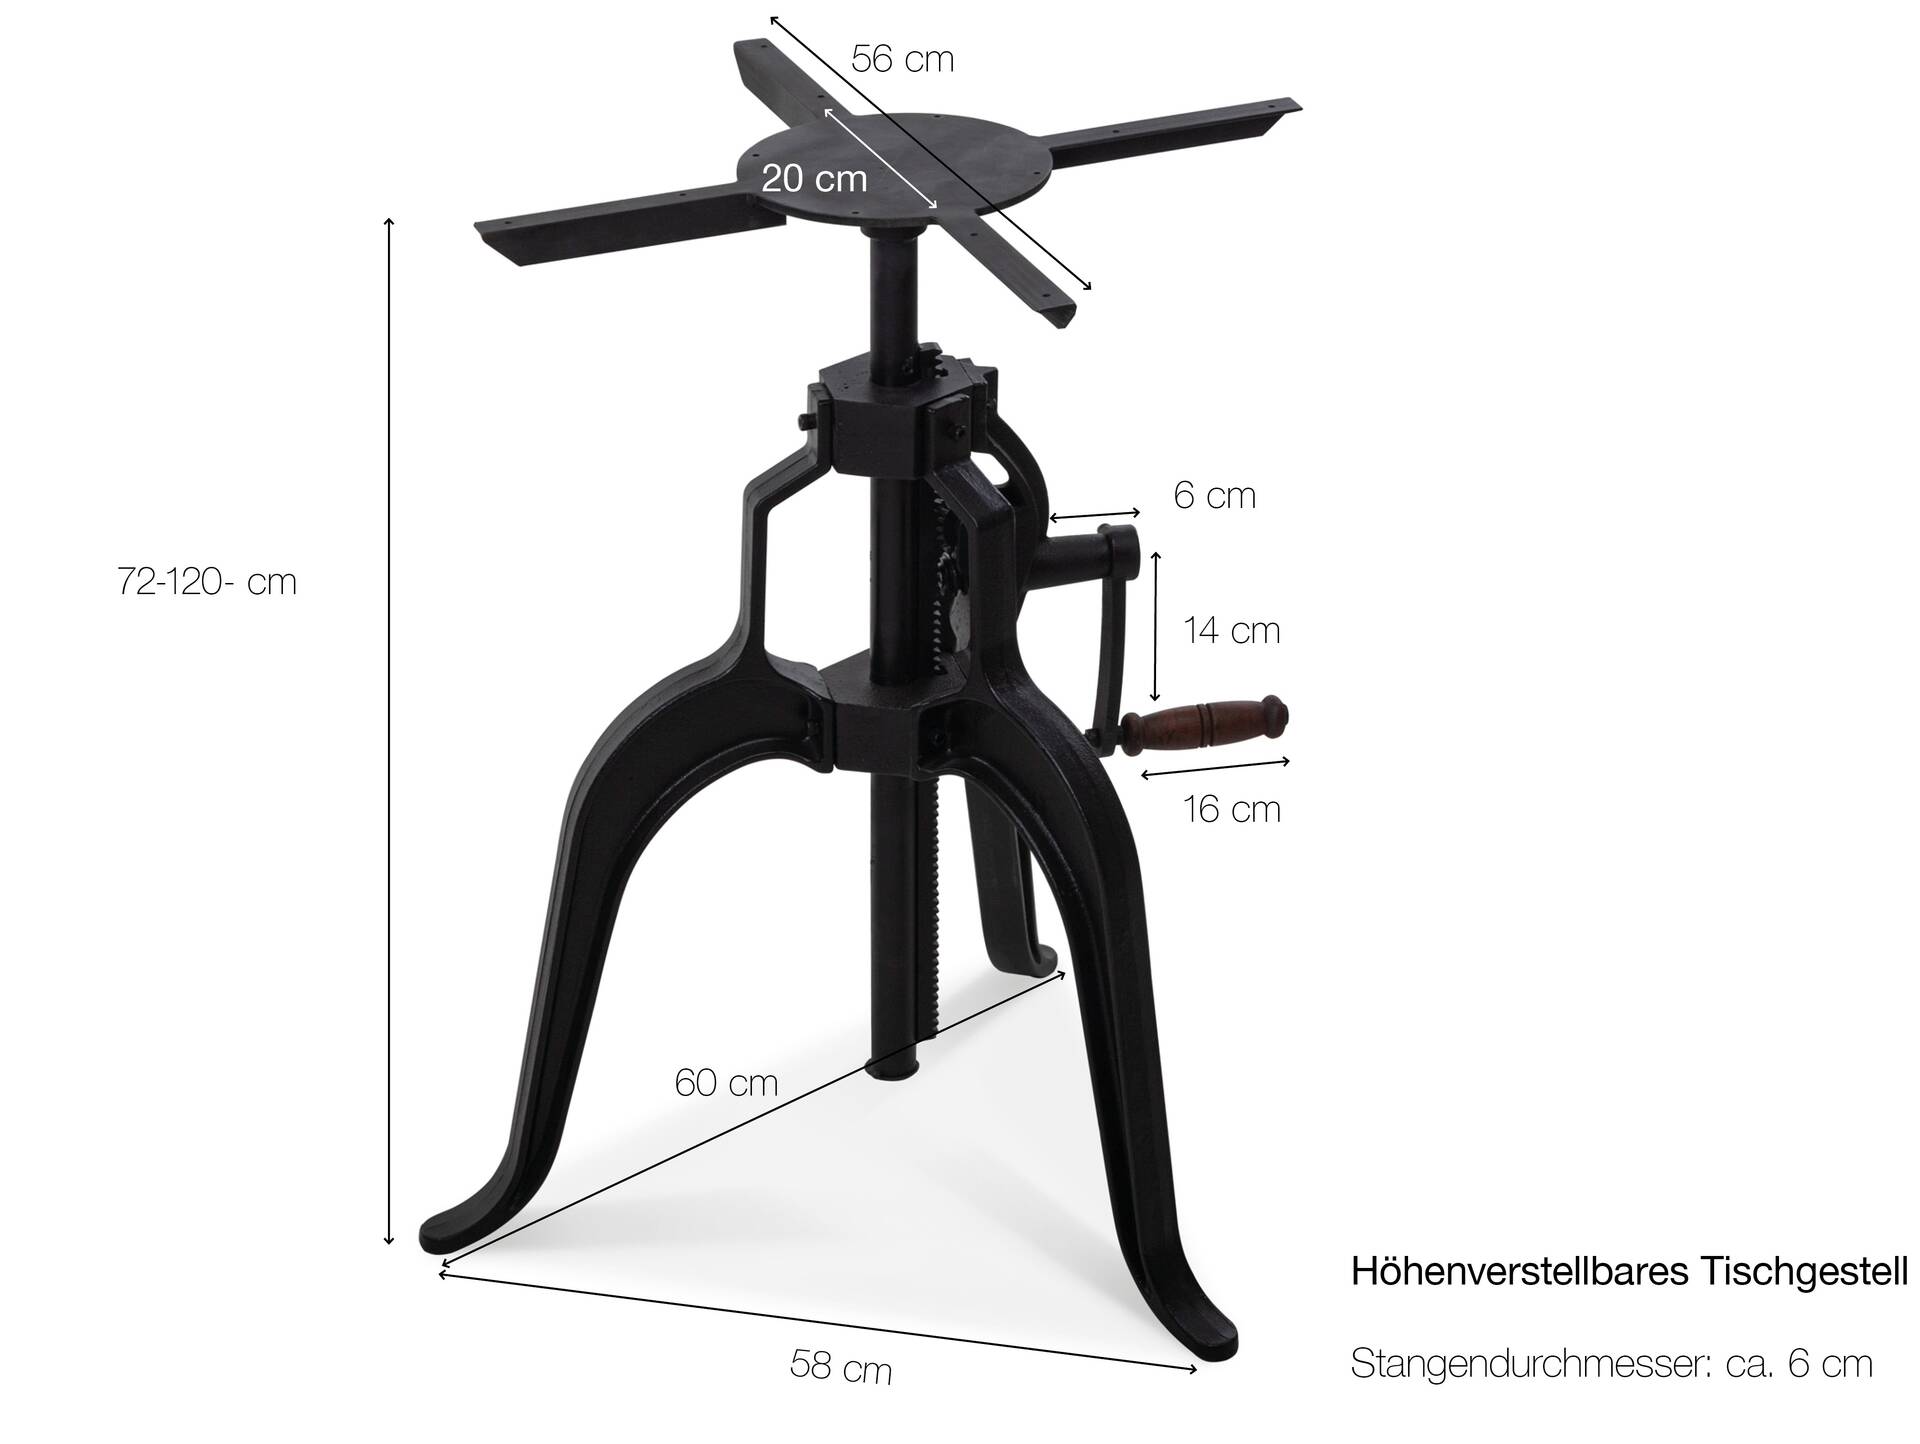 Höhenverstellbares Tischgestell für Esstisch / Bartisch, Material Gusseisen, schwarz, Höhe: 72-120 cm 